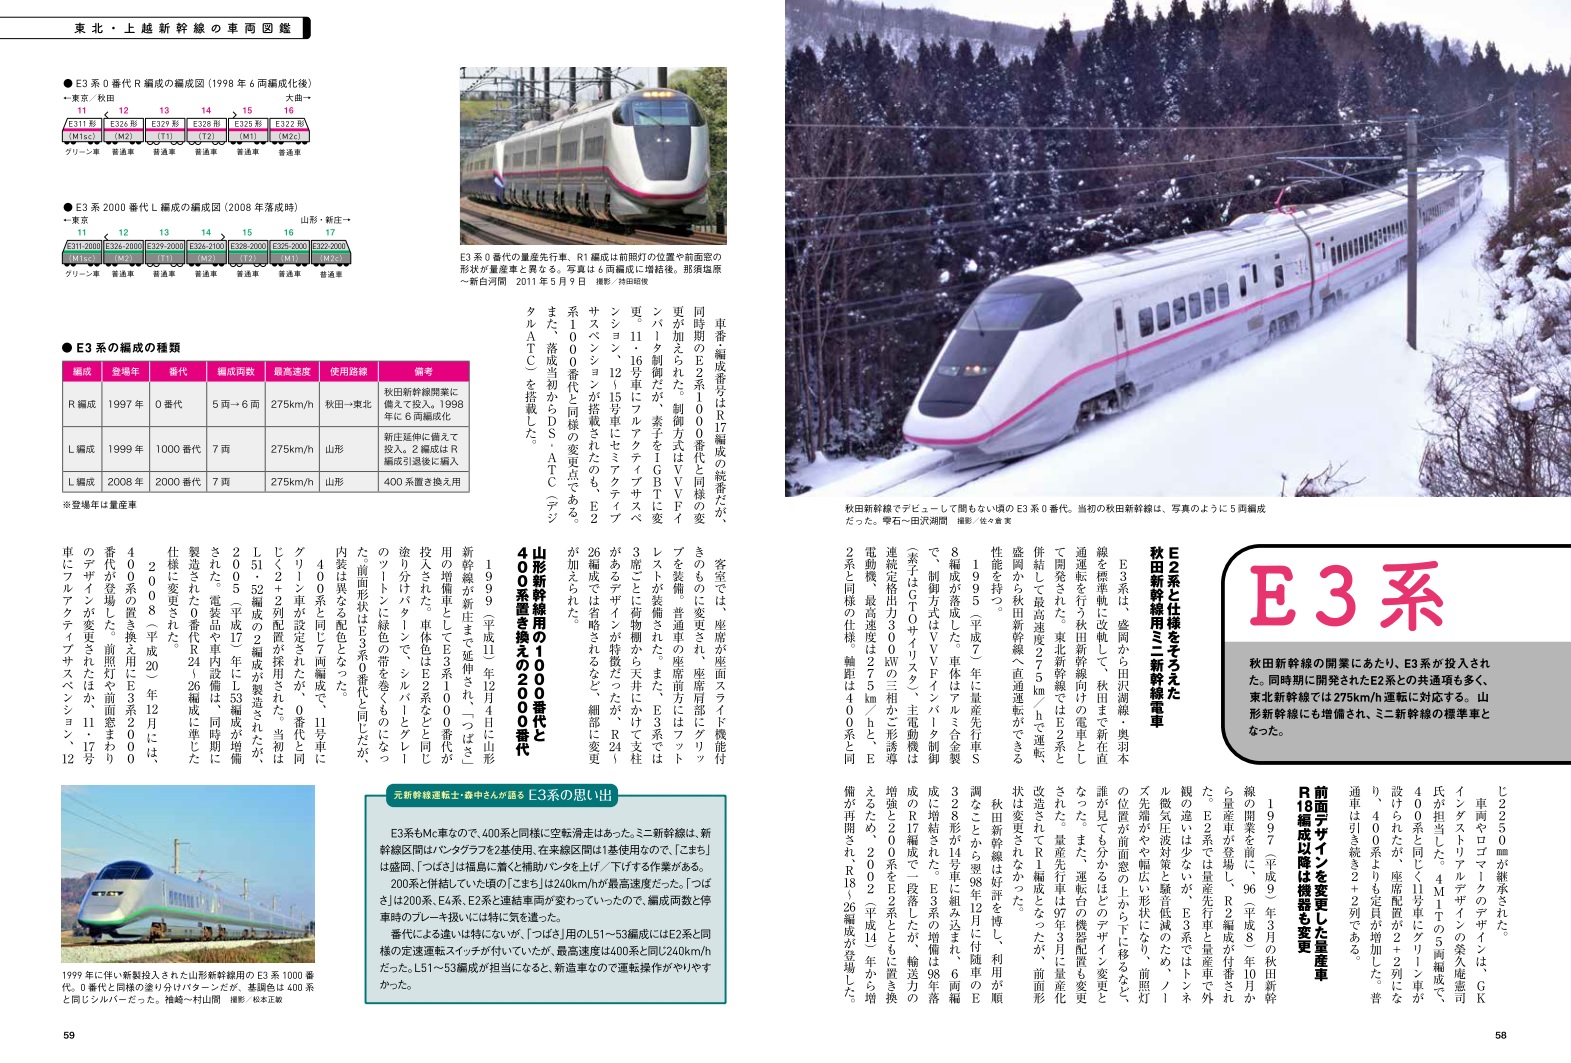 東北・上越新幹線開業40周年、山形・北陸・秋田新幹線も周年 「新幹線